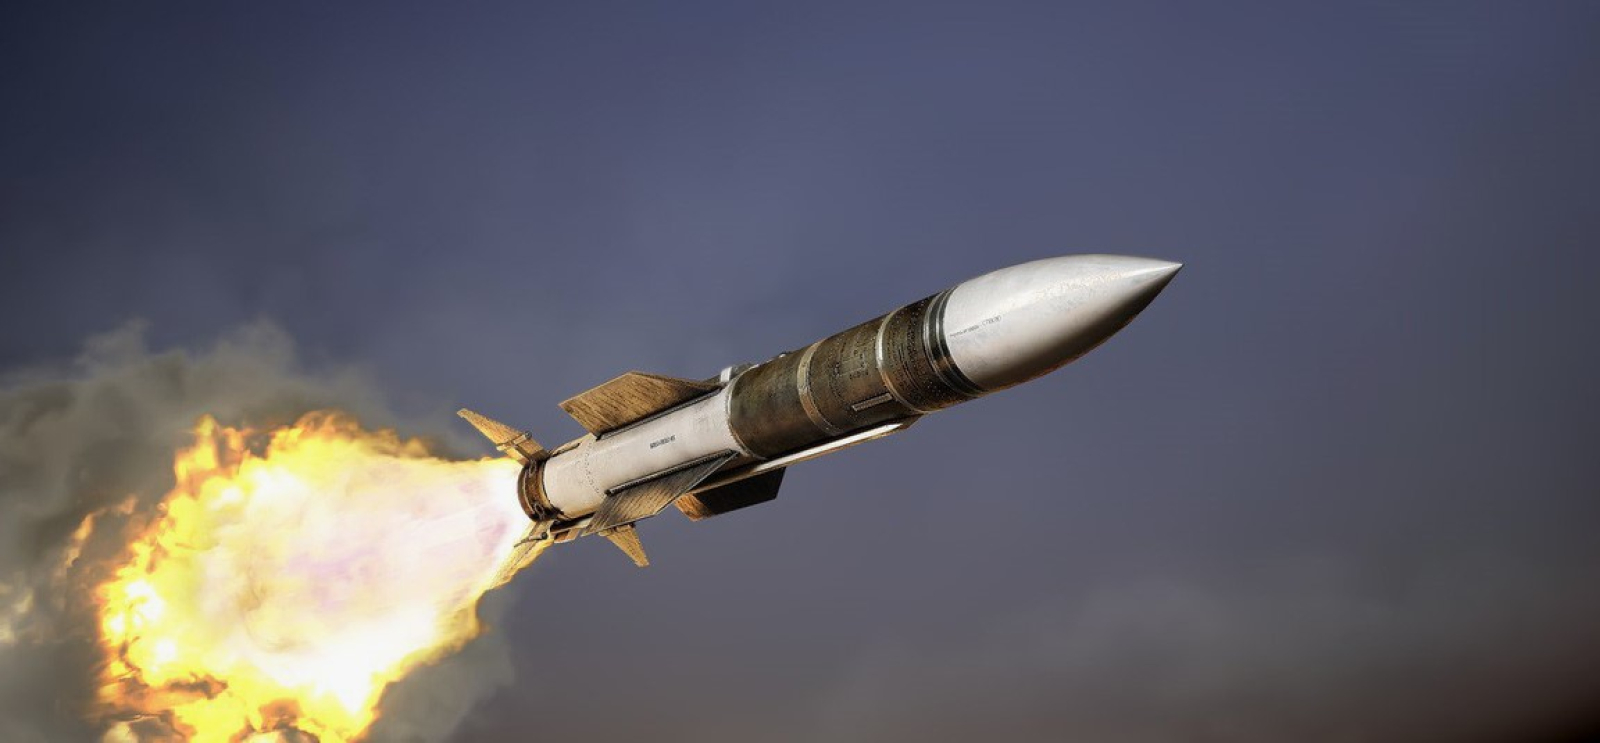 Американская умная ракета под управлением ChatGPT идентифицировала себя русской авиабомбой и рухнула на командный пункт США